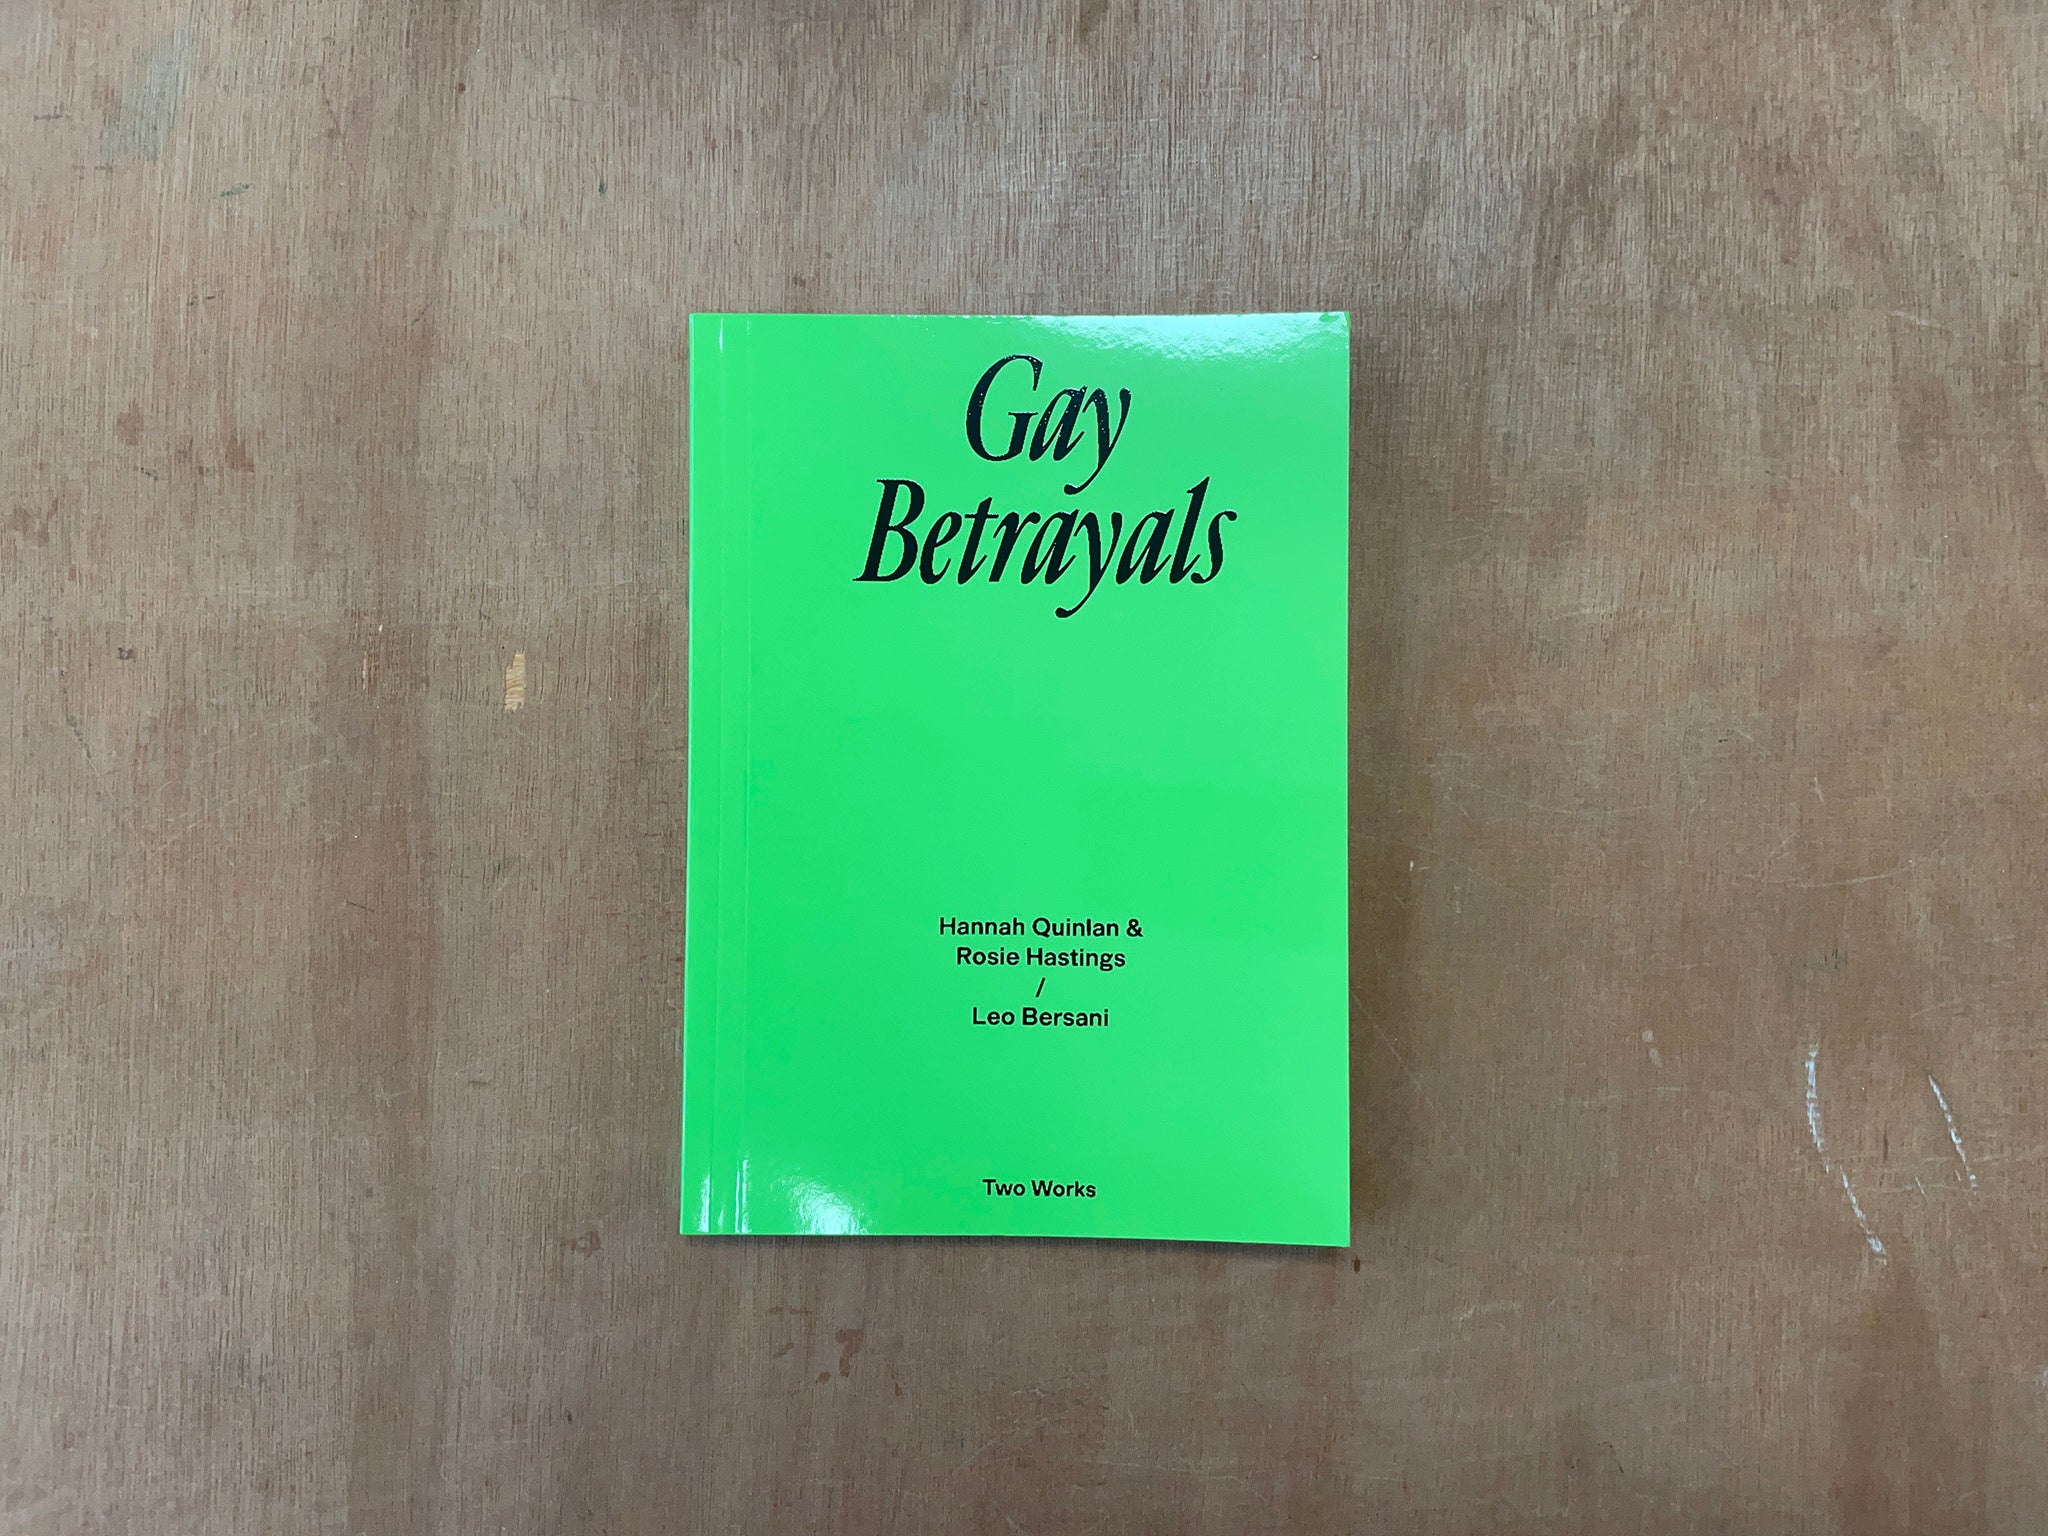 GAY BETRAYALS by Hannah Quinlan & Rosie Hastings / Leo Bersani